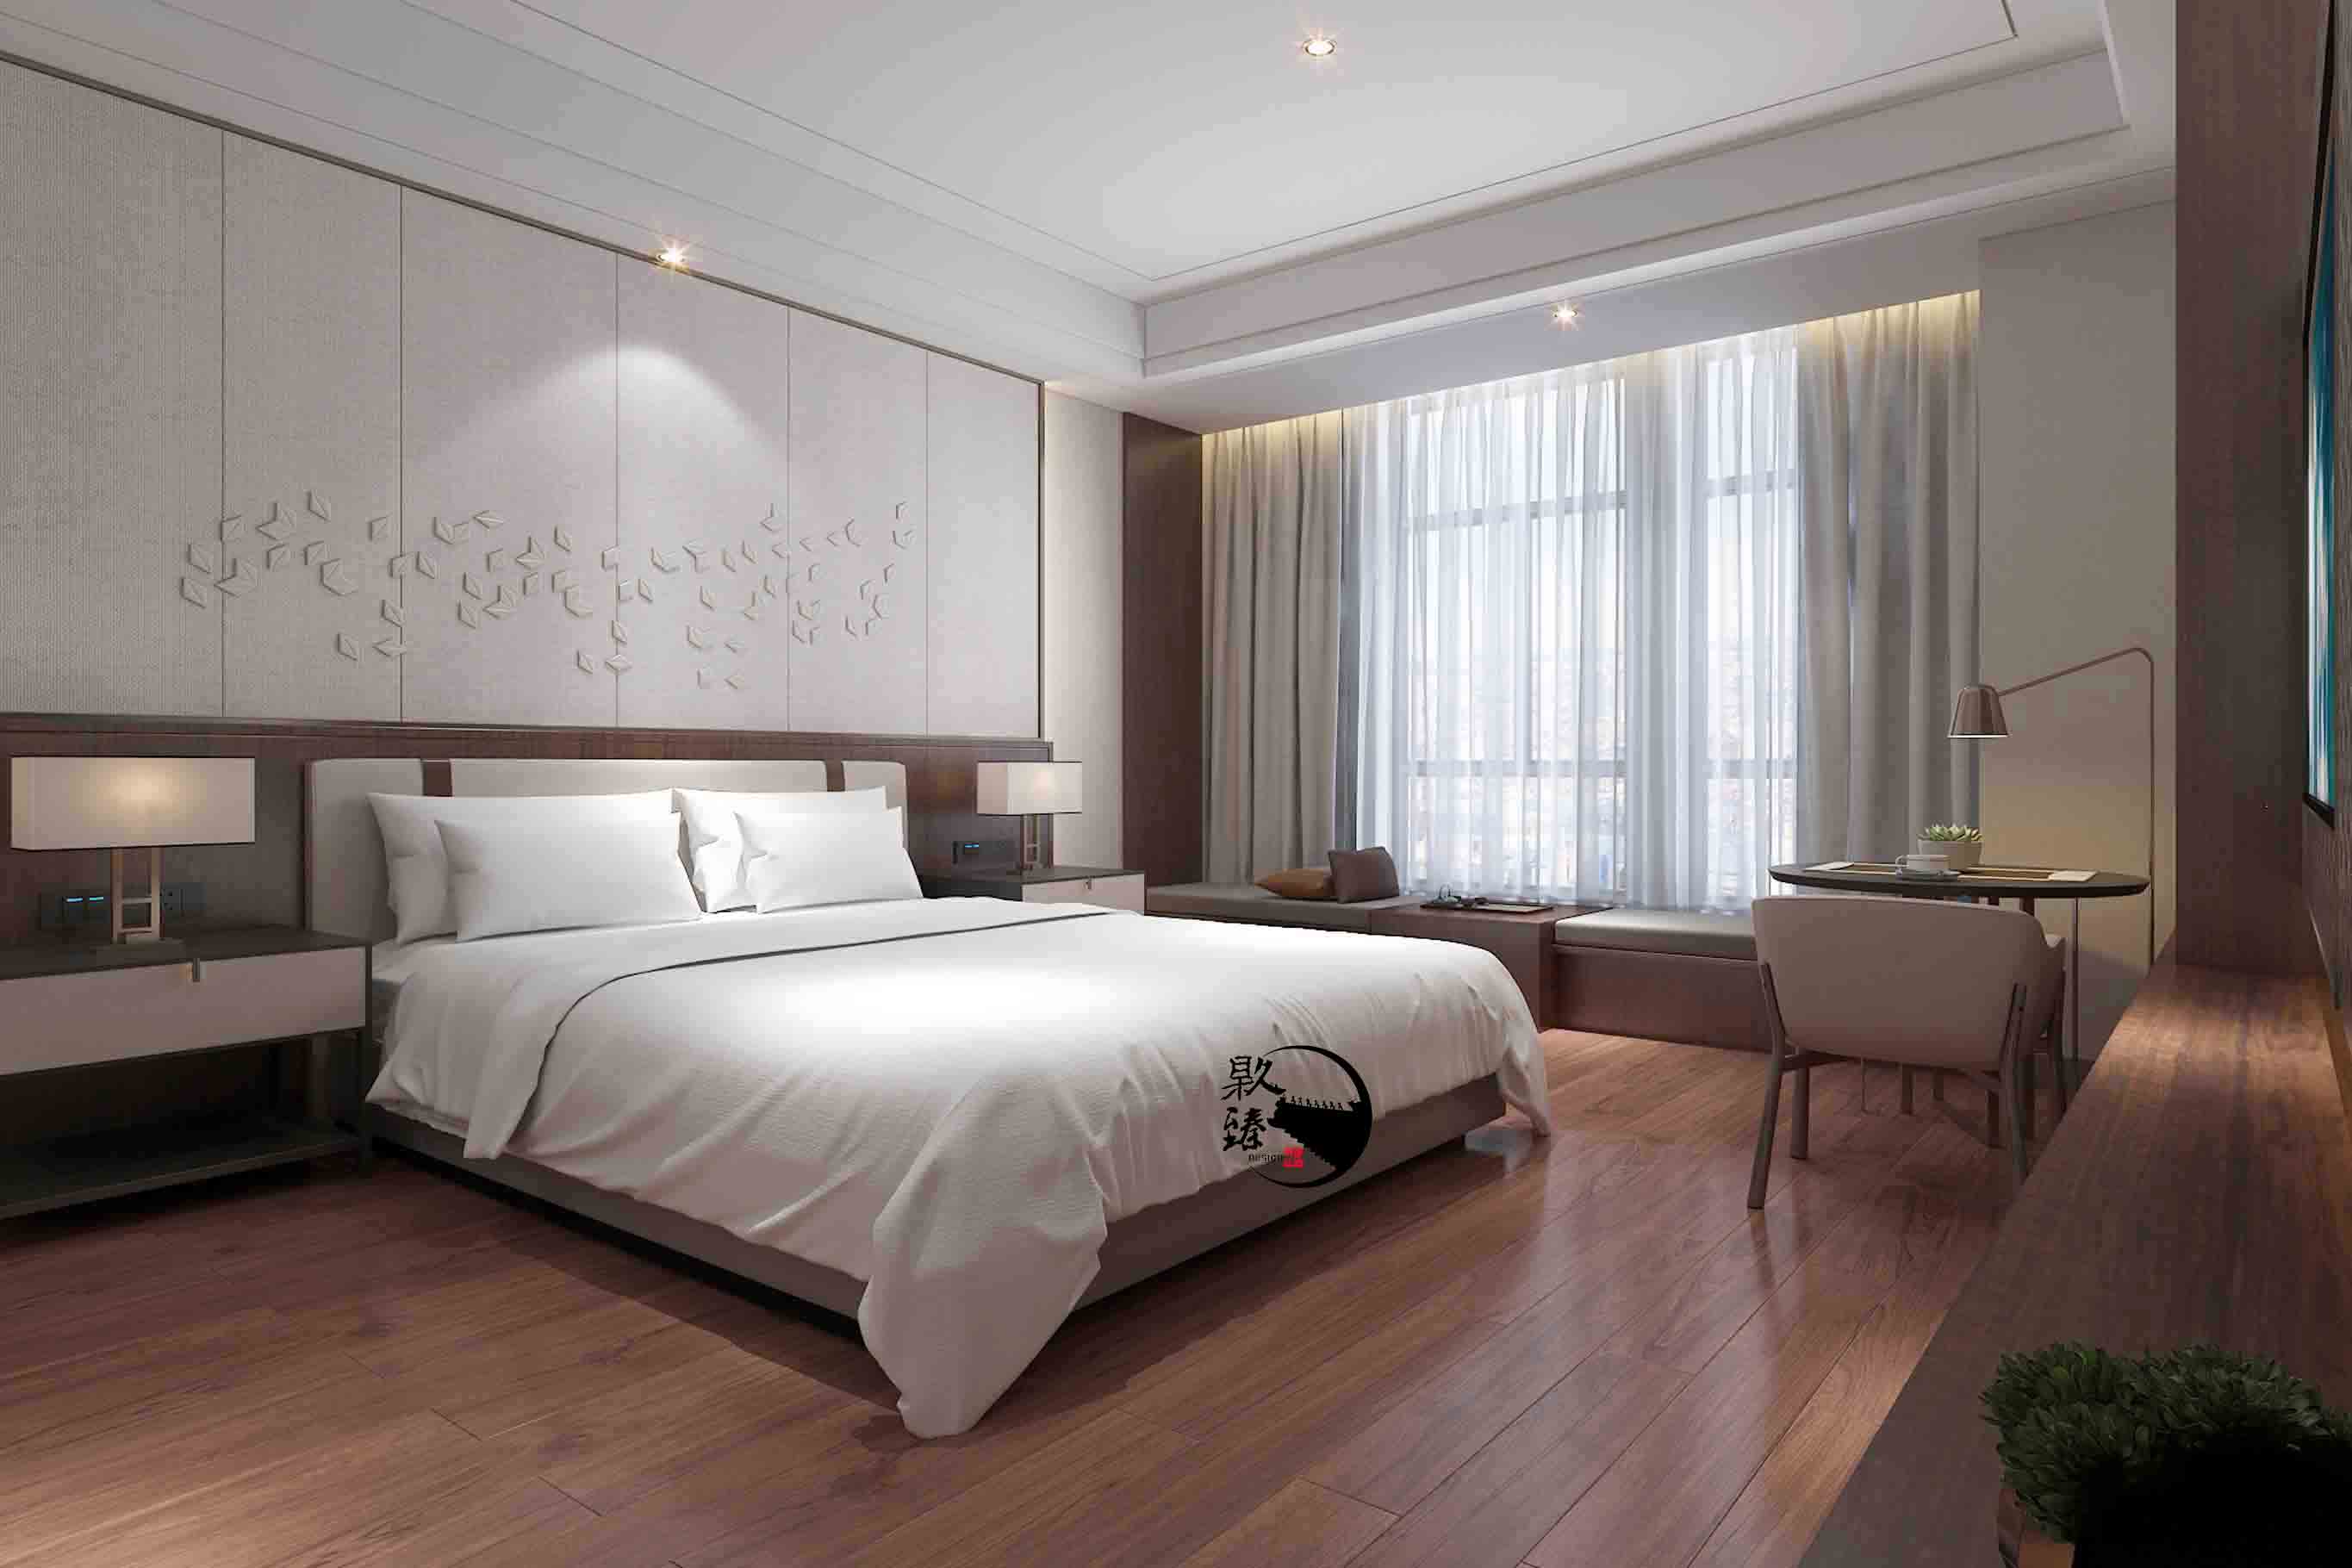 吴忠米素酒店设计|满足客户对舒适和安静的需求